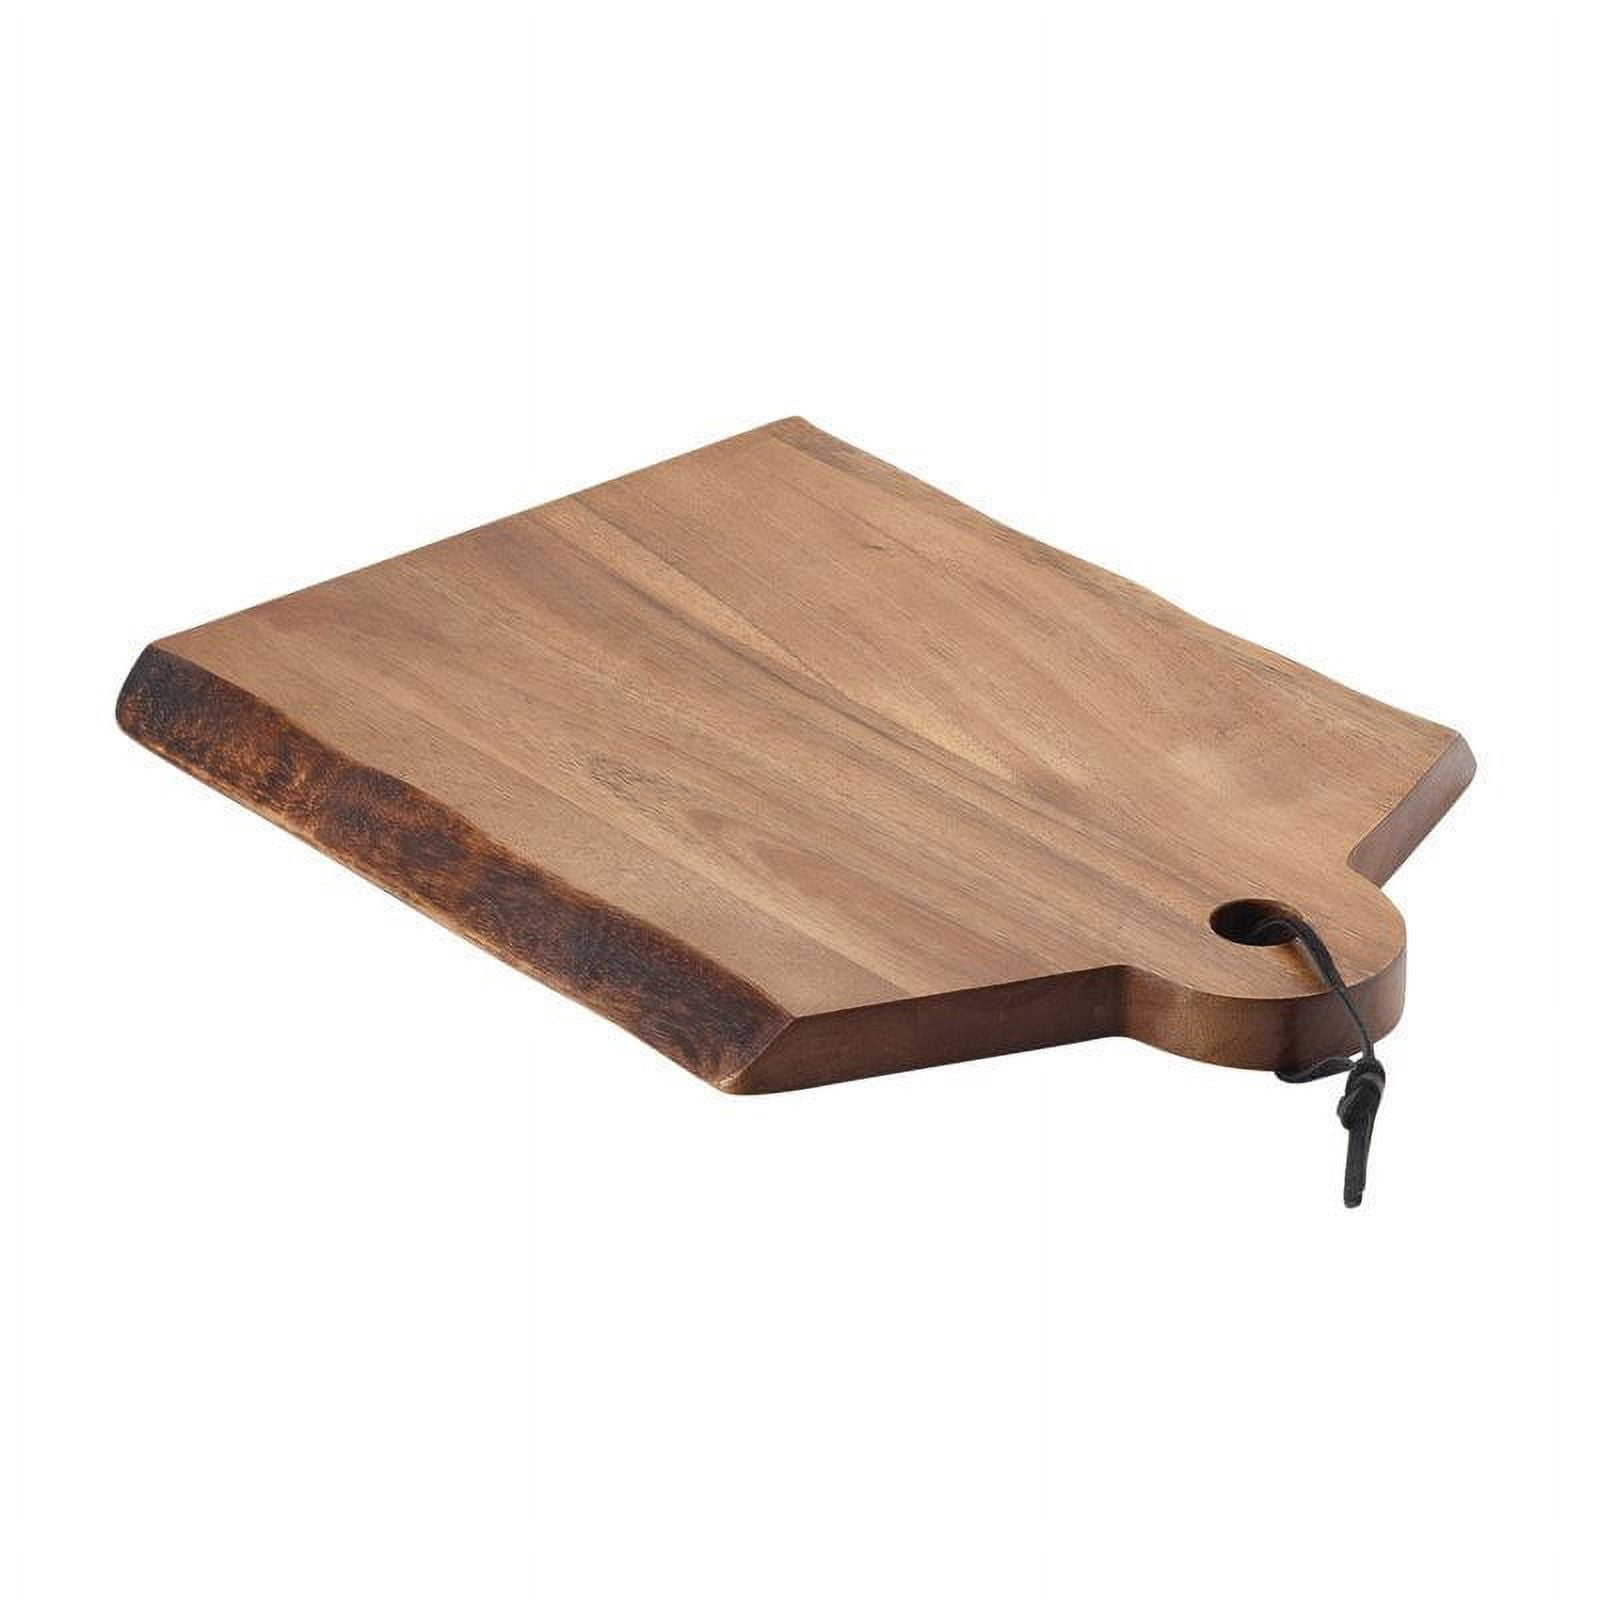 SMÅÄTA Cutting board, acacia, 11x8 ¾ - IKEA